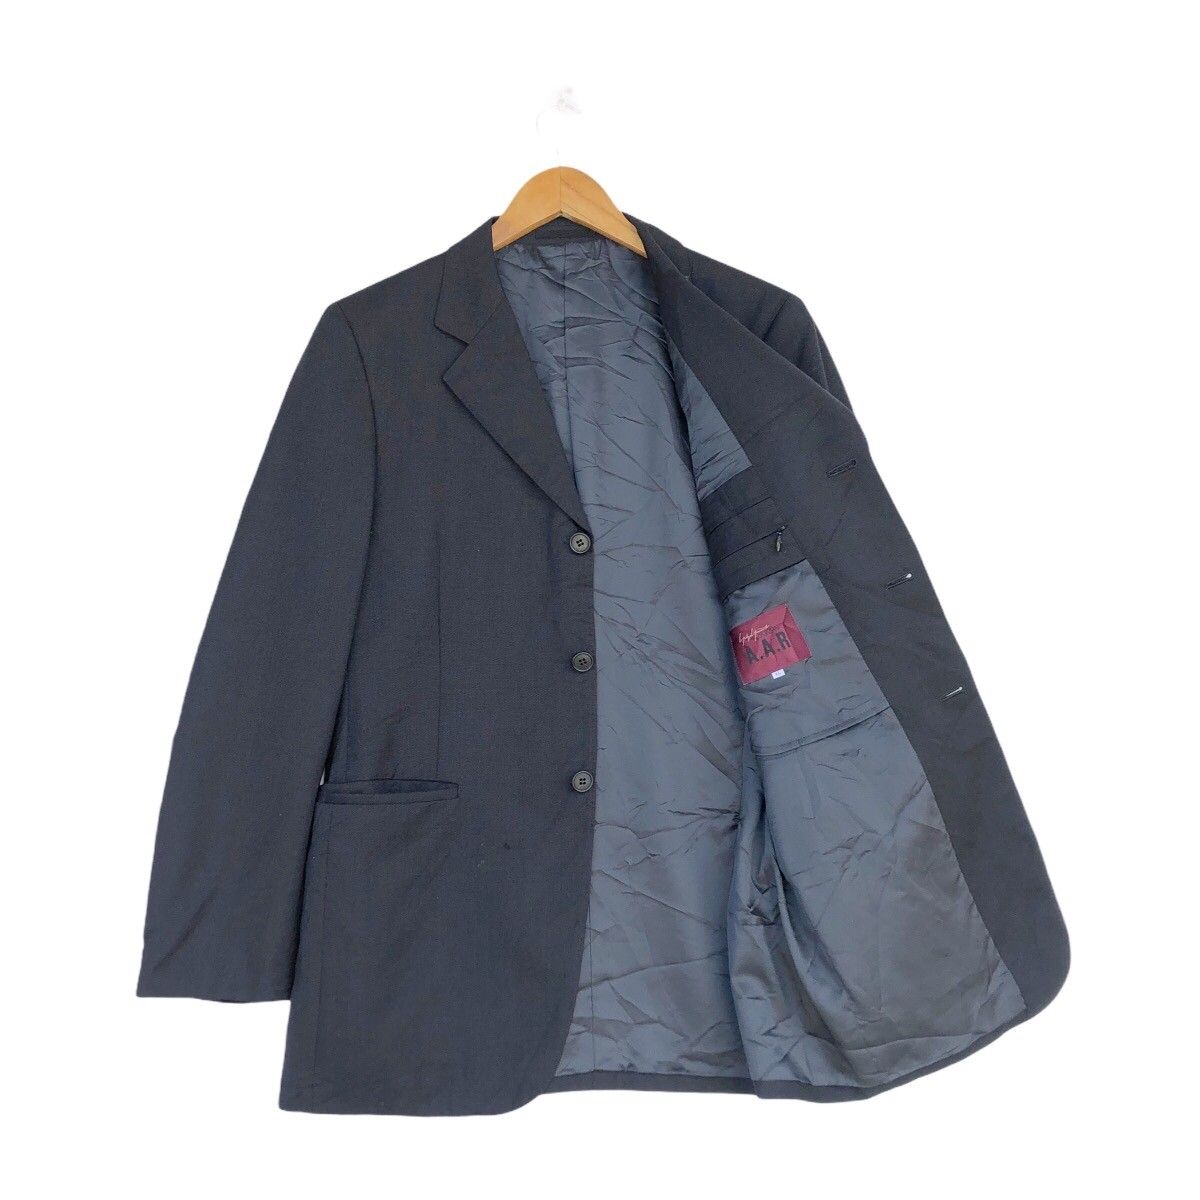 Yohji Yamamoto Yohji Yamamoto A.A.R D’urban Classic Blazer Jacket | Grailed